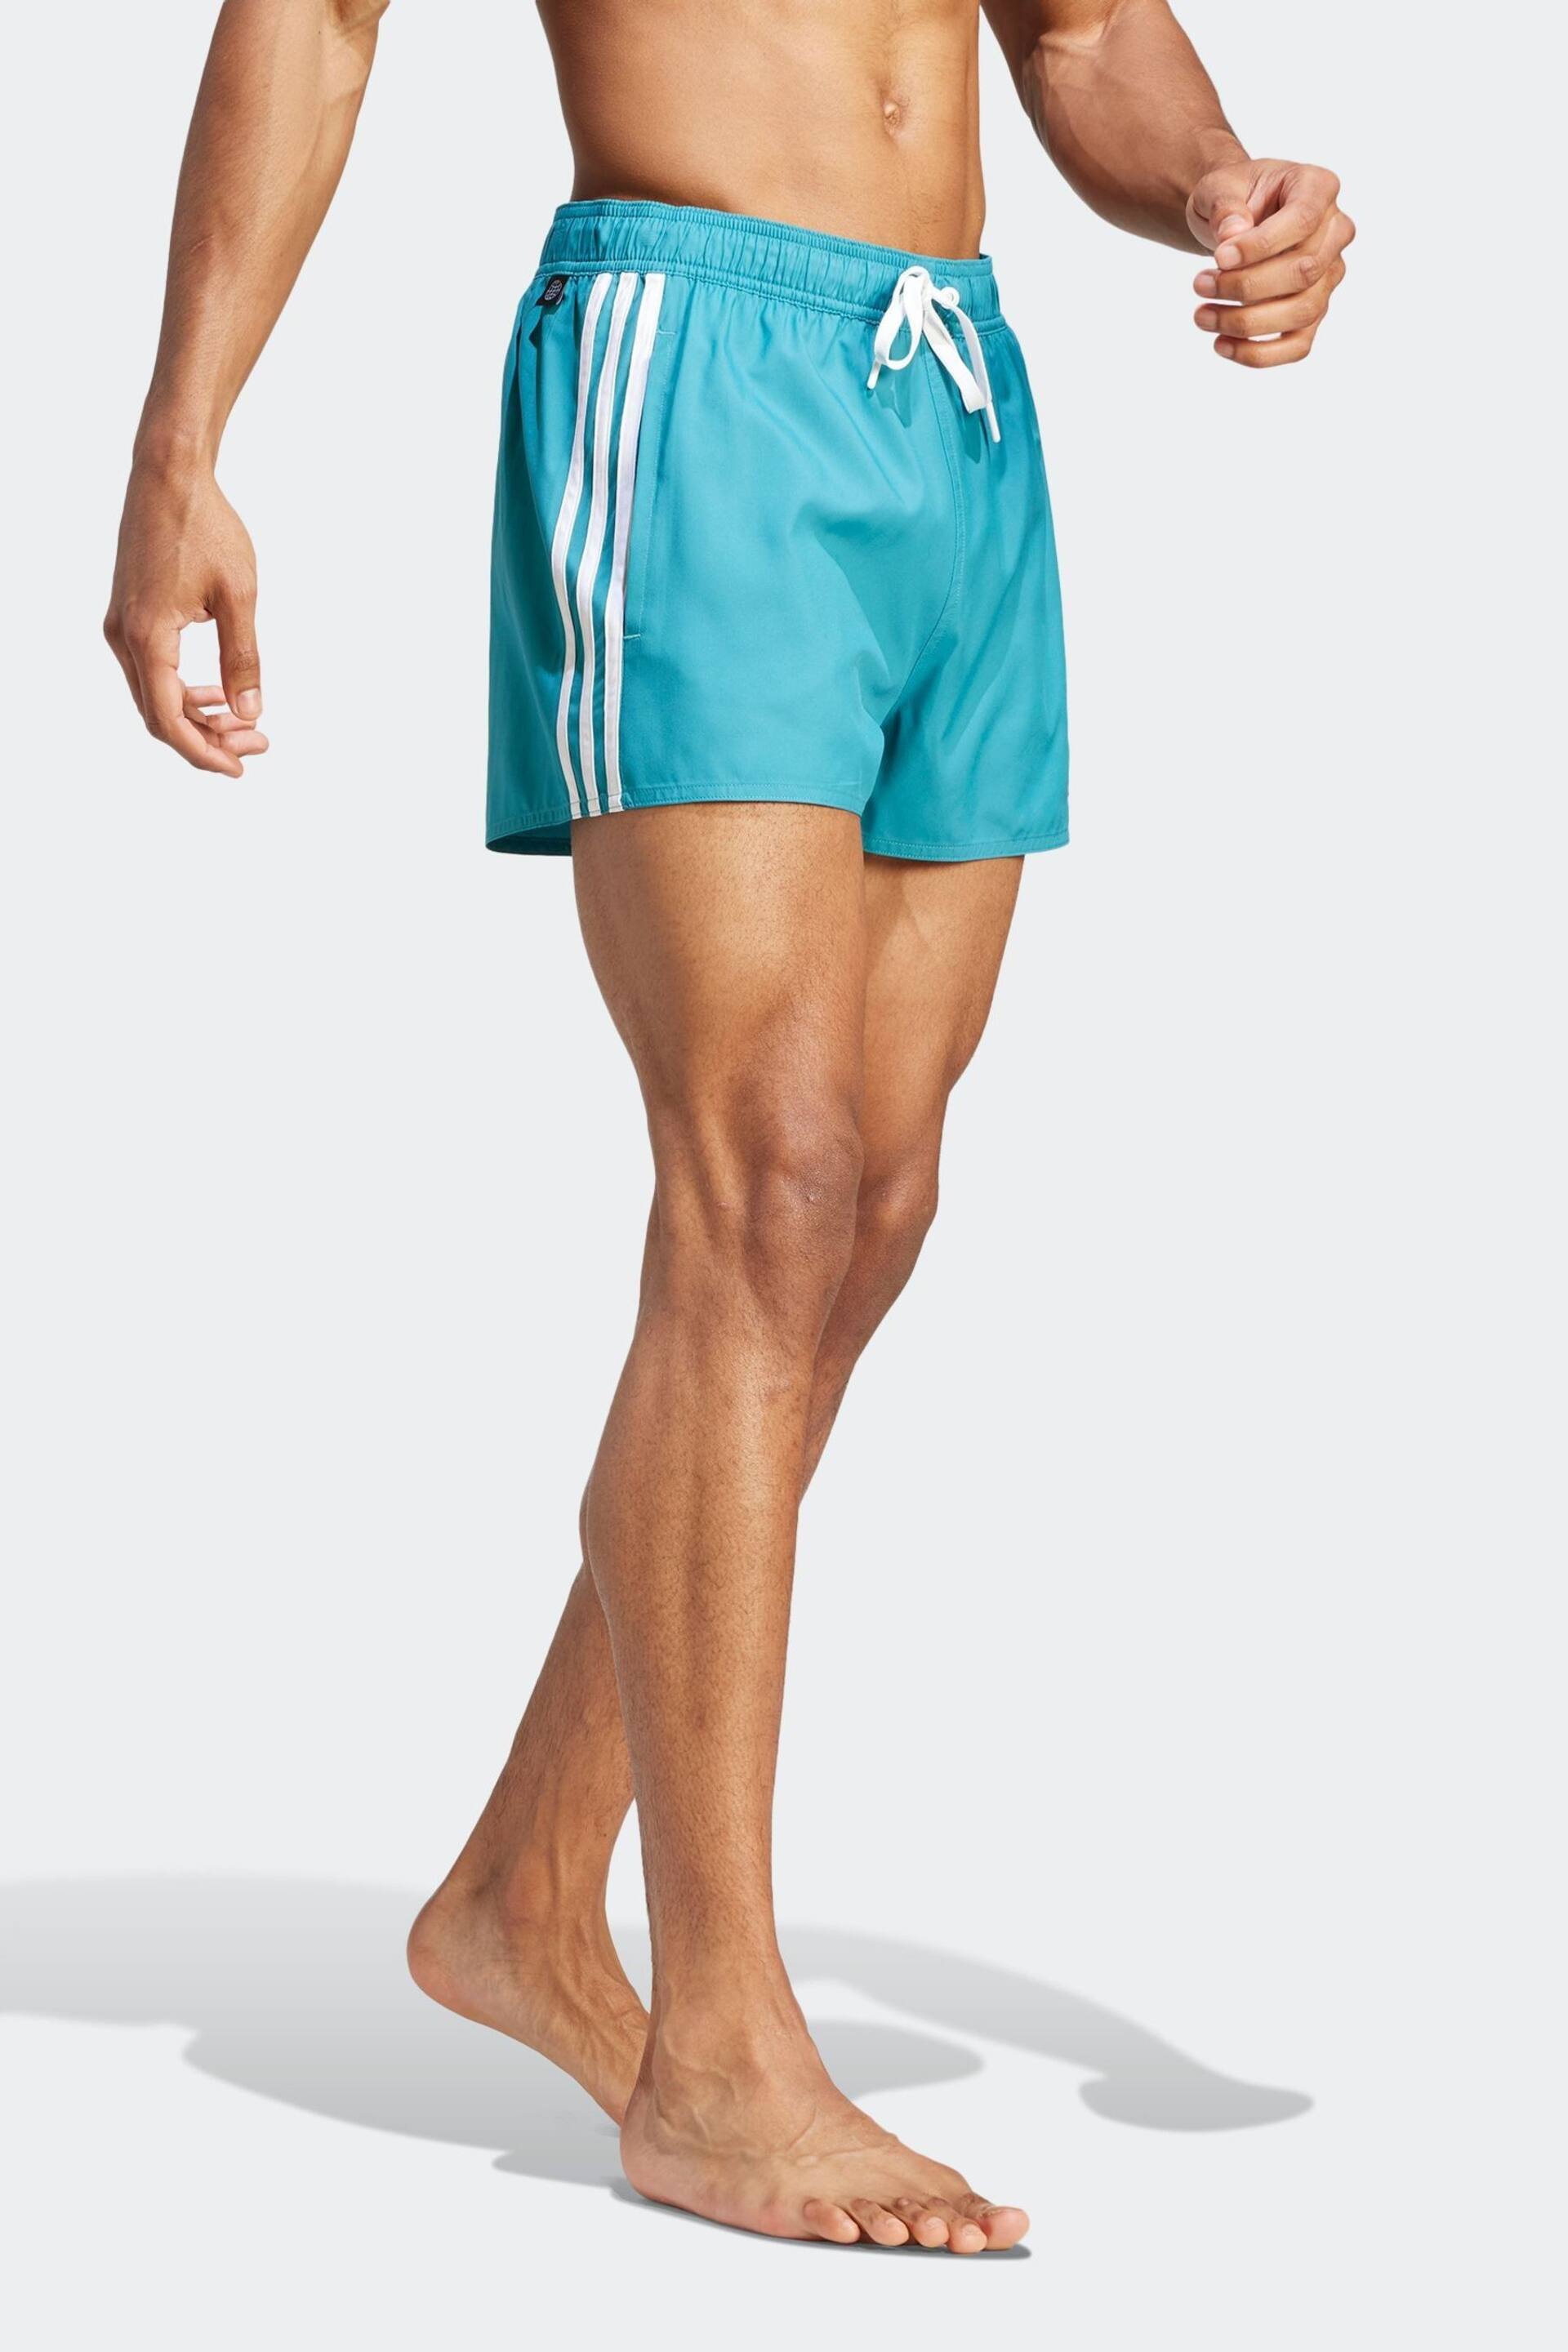 adidas Turquoise Blue 3-Stripes CLX Very Short Length Swim Shorts - Image 5 of 9